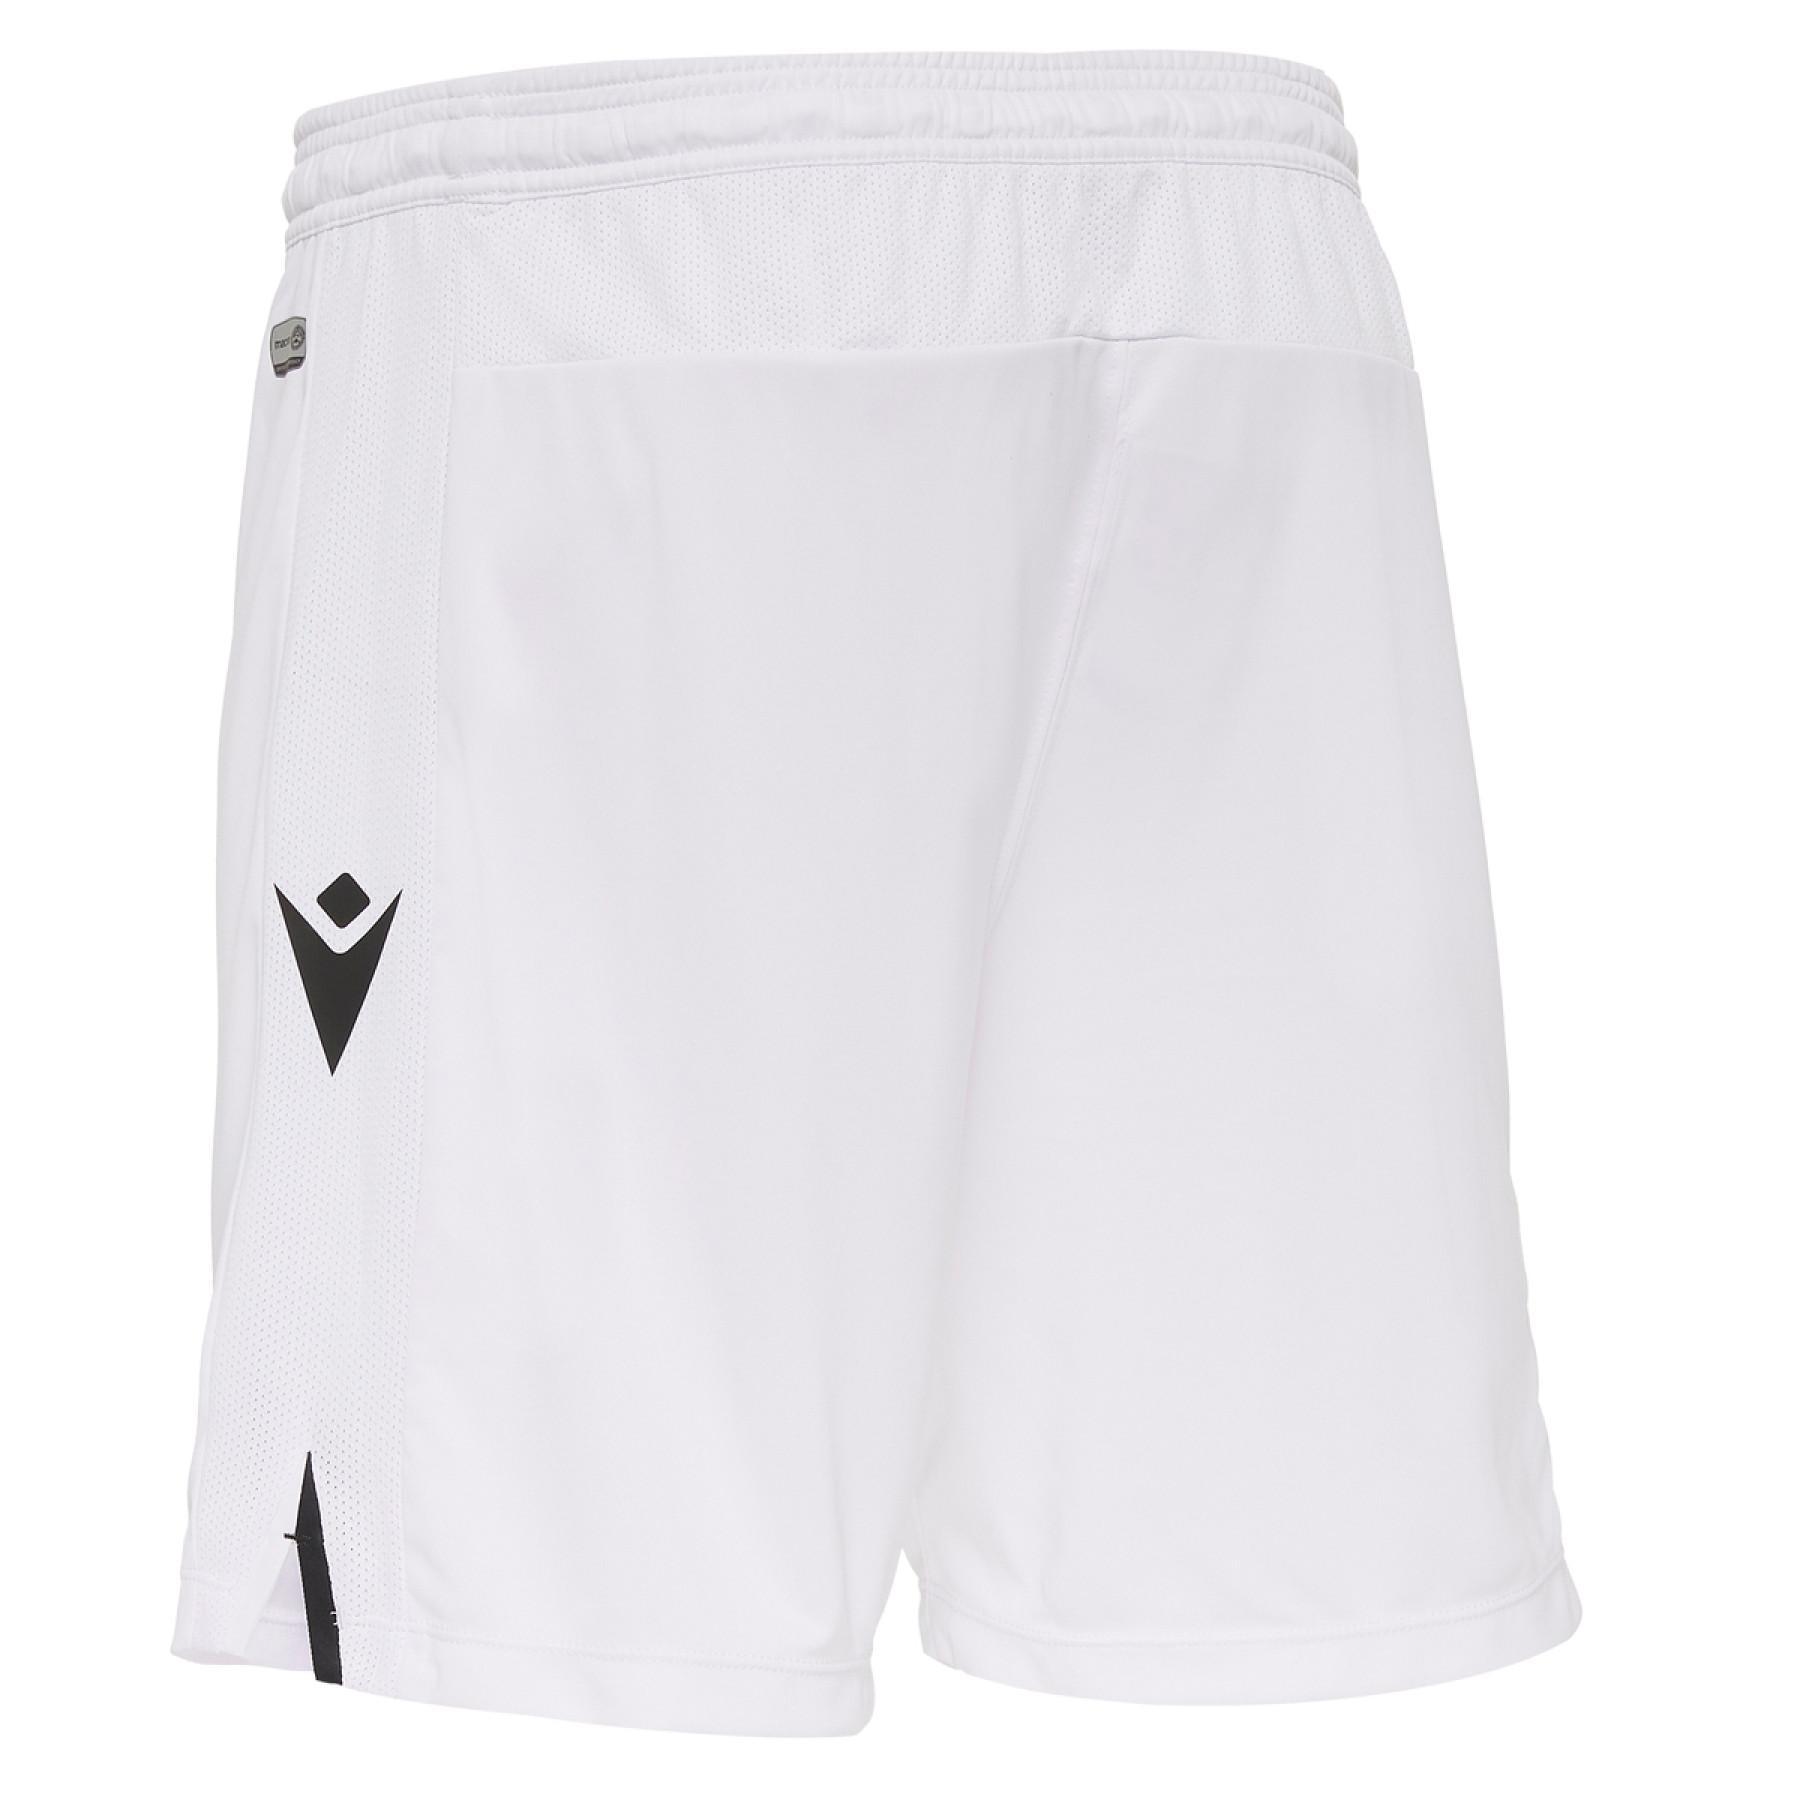 Pantalones cortos para el hogar Udinese calcio 2020/21